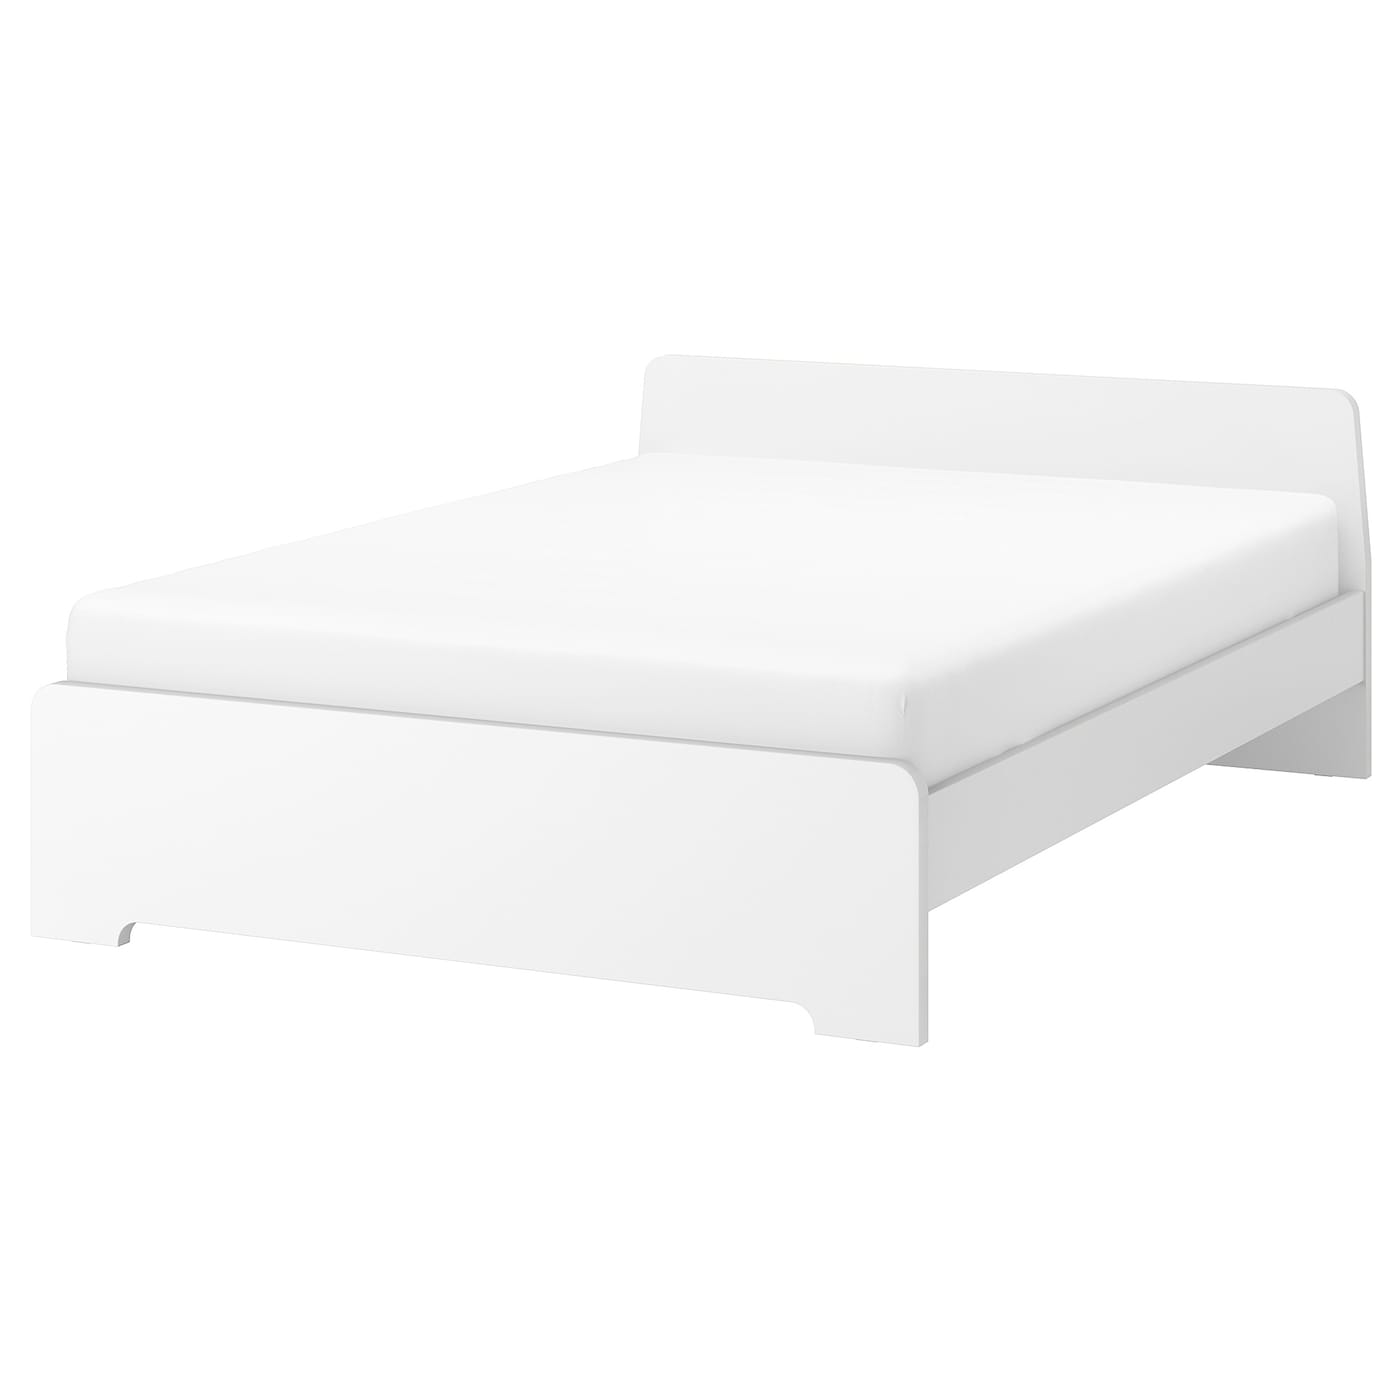 Двуспальная кровать - IKEA ASKVOLL/LURÖY/LUROY, 200х160 см, белый, АСКВОЛЬ/ЛУРОЙ ИКЕА